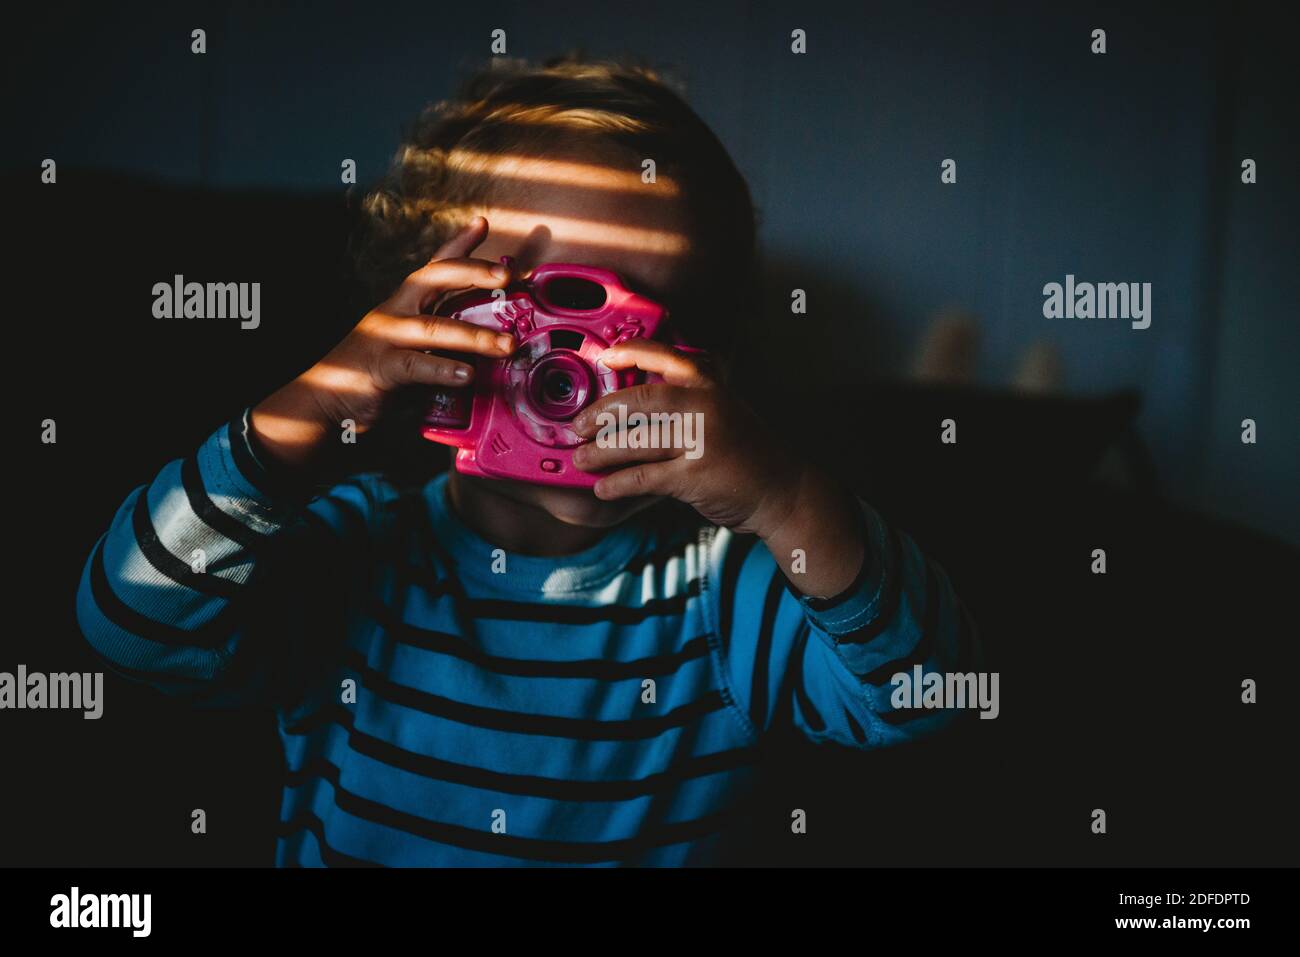 Jeune enfant prétendant prendre une photo avec un appareil photo jouet intérieur à la maison Banque D'Images